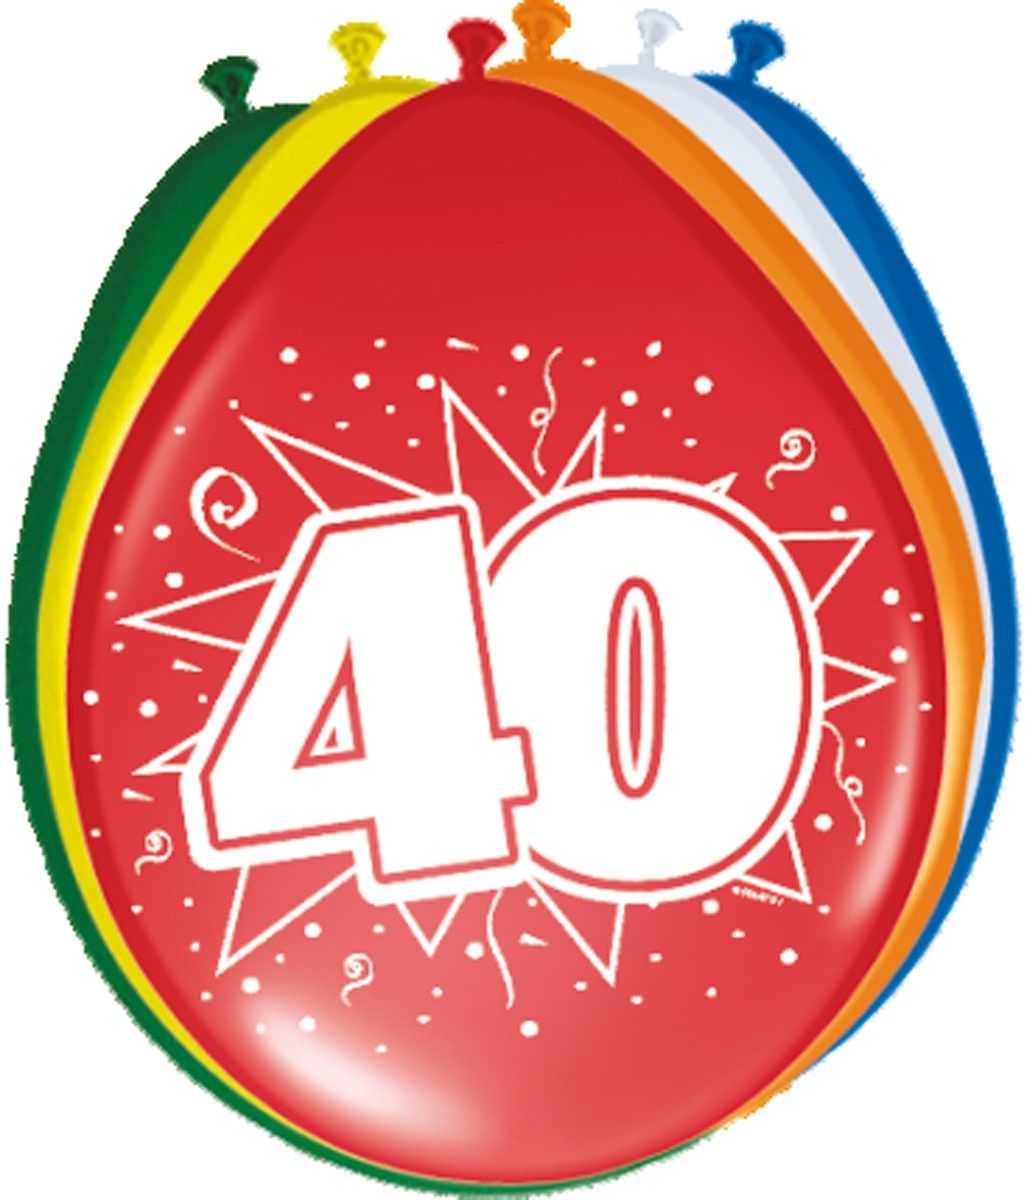 Feestelijke verjaardag jubileum ballonnen 40 jaar